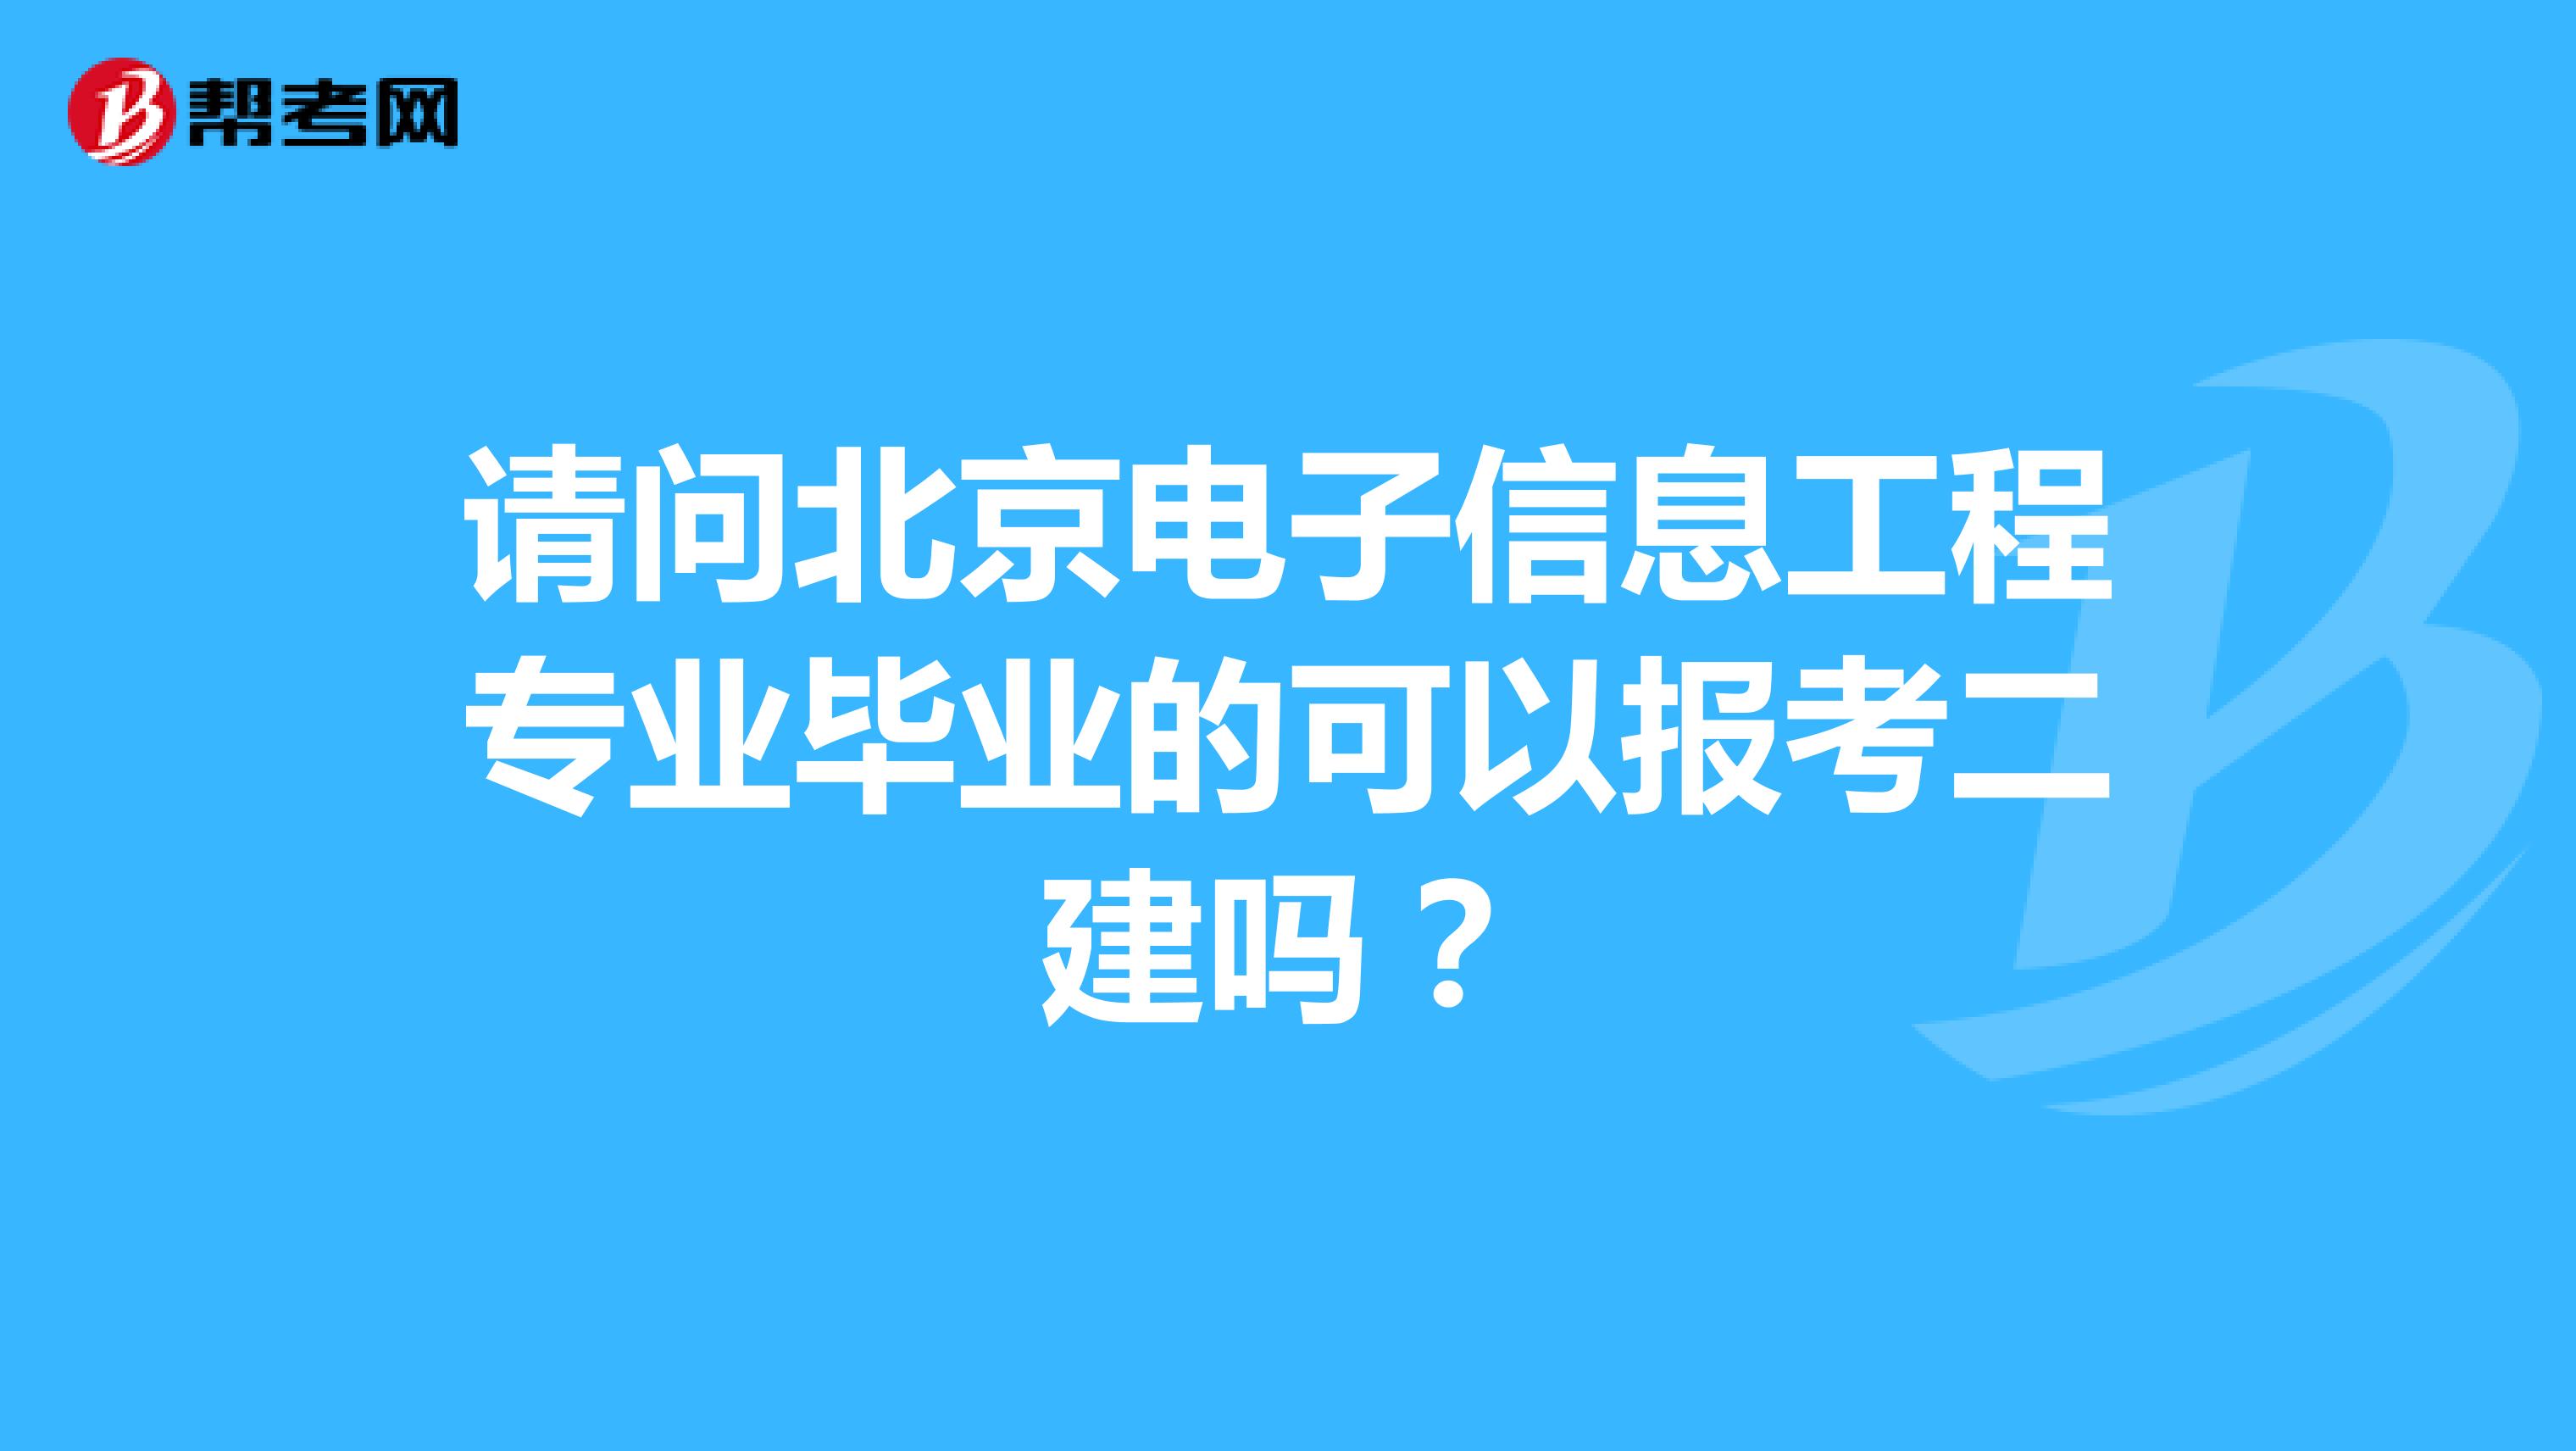 请问北京电子信息工程专业毕业的可以报考二建吗？